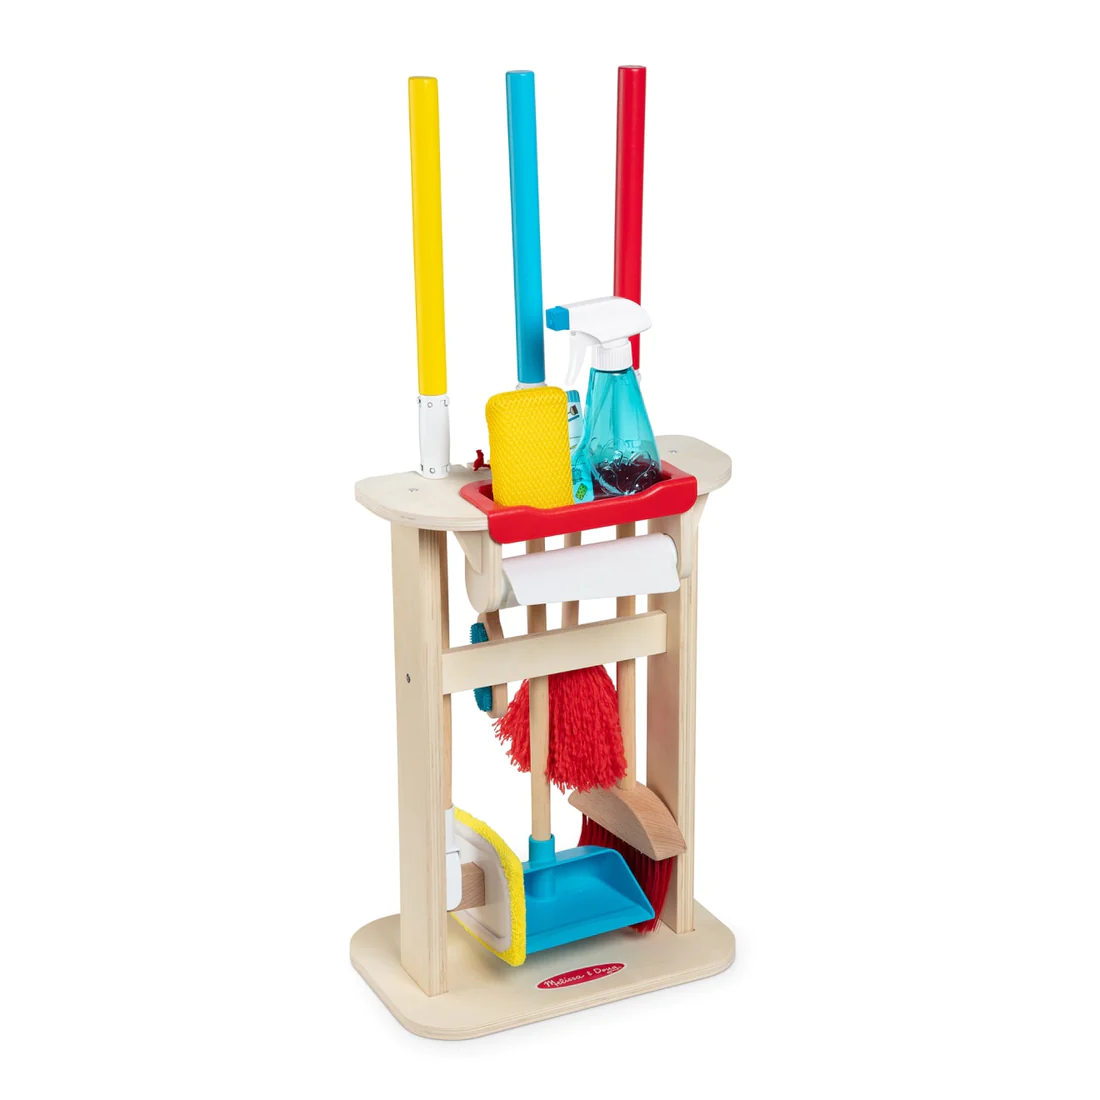 Reinigungsset Deluxe - Kinderspielzeug Putzgerät mit Ständer, Besen Schaufel u.v.m. KiTa-Spielewelt